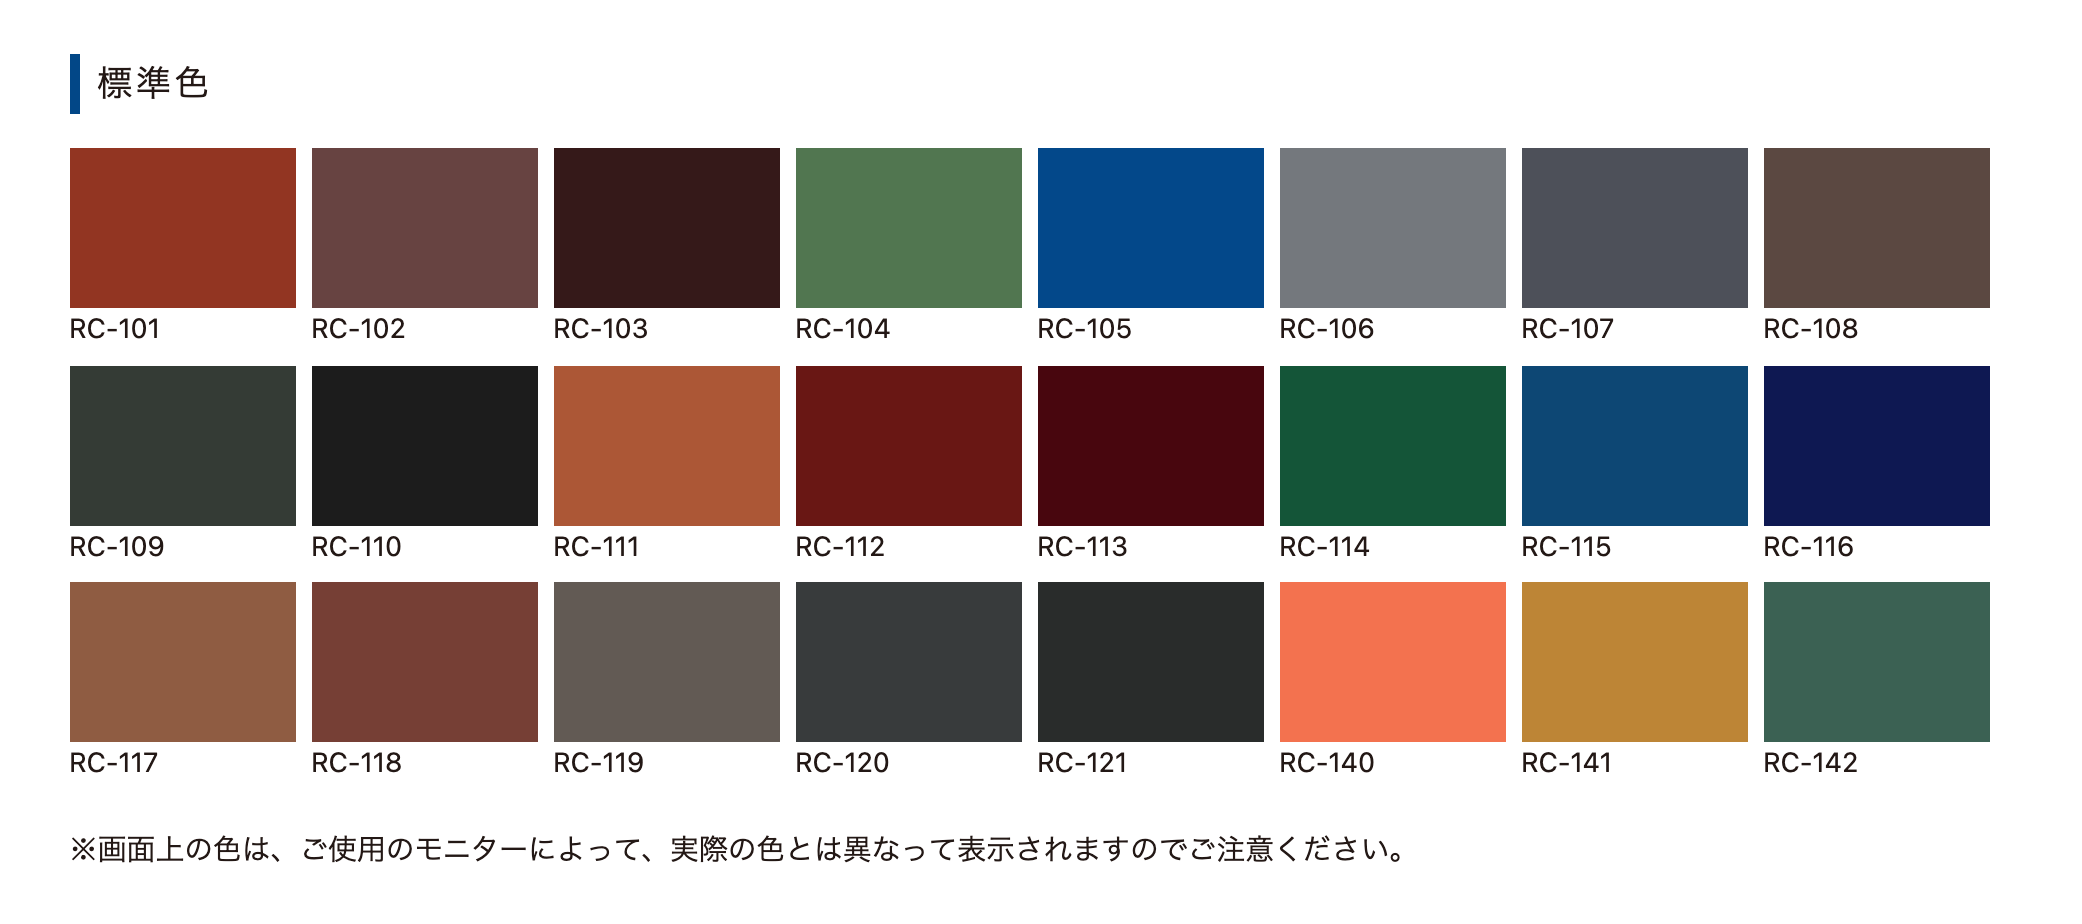 ヤネフレッシュSi 標準色 ＃超耐久NAD型特殊シリコン樹脂塗料 #エスケー化研 –